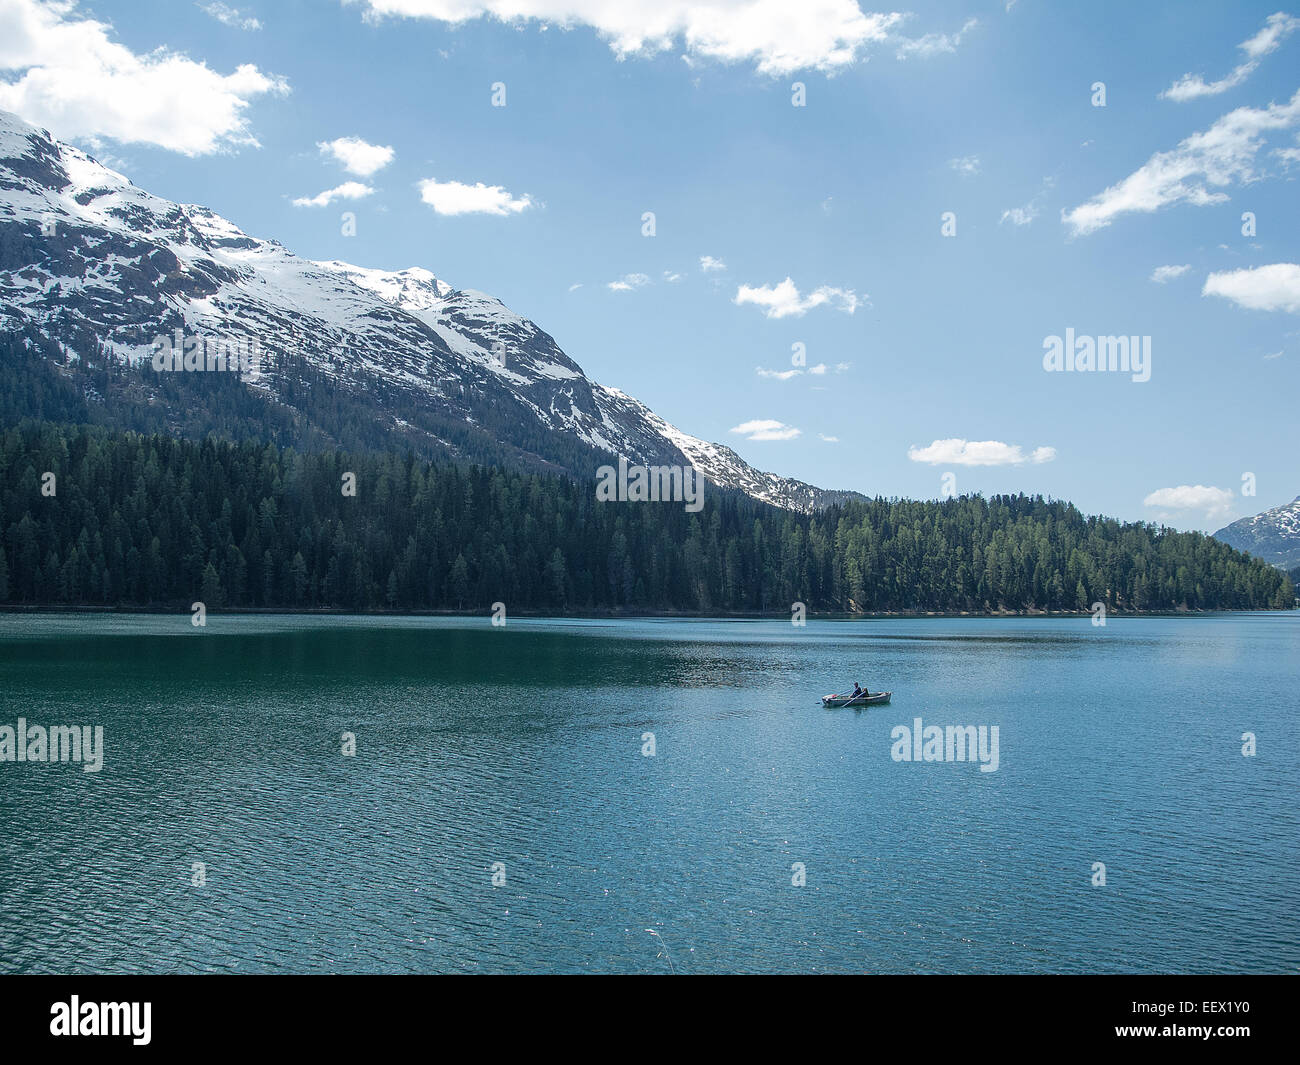 Kleines Boot mitten im See mit schneebedeckten Bergen und blauem Himmel in  St. Moritz in der Schweiz Stockfotografie - Alamy